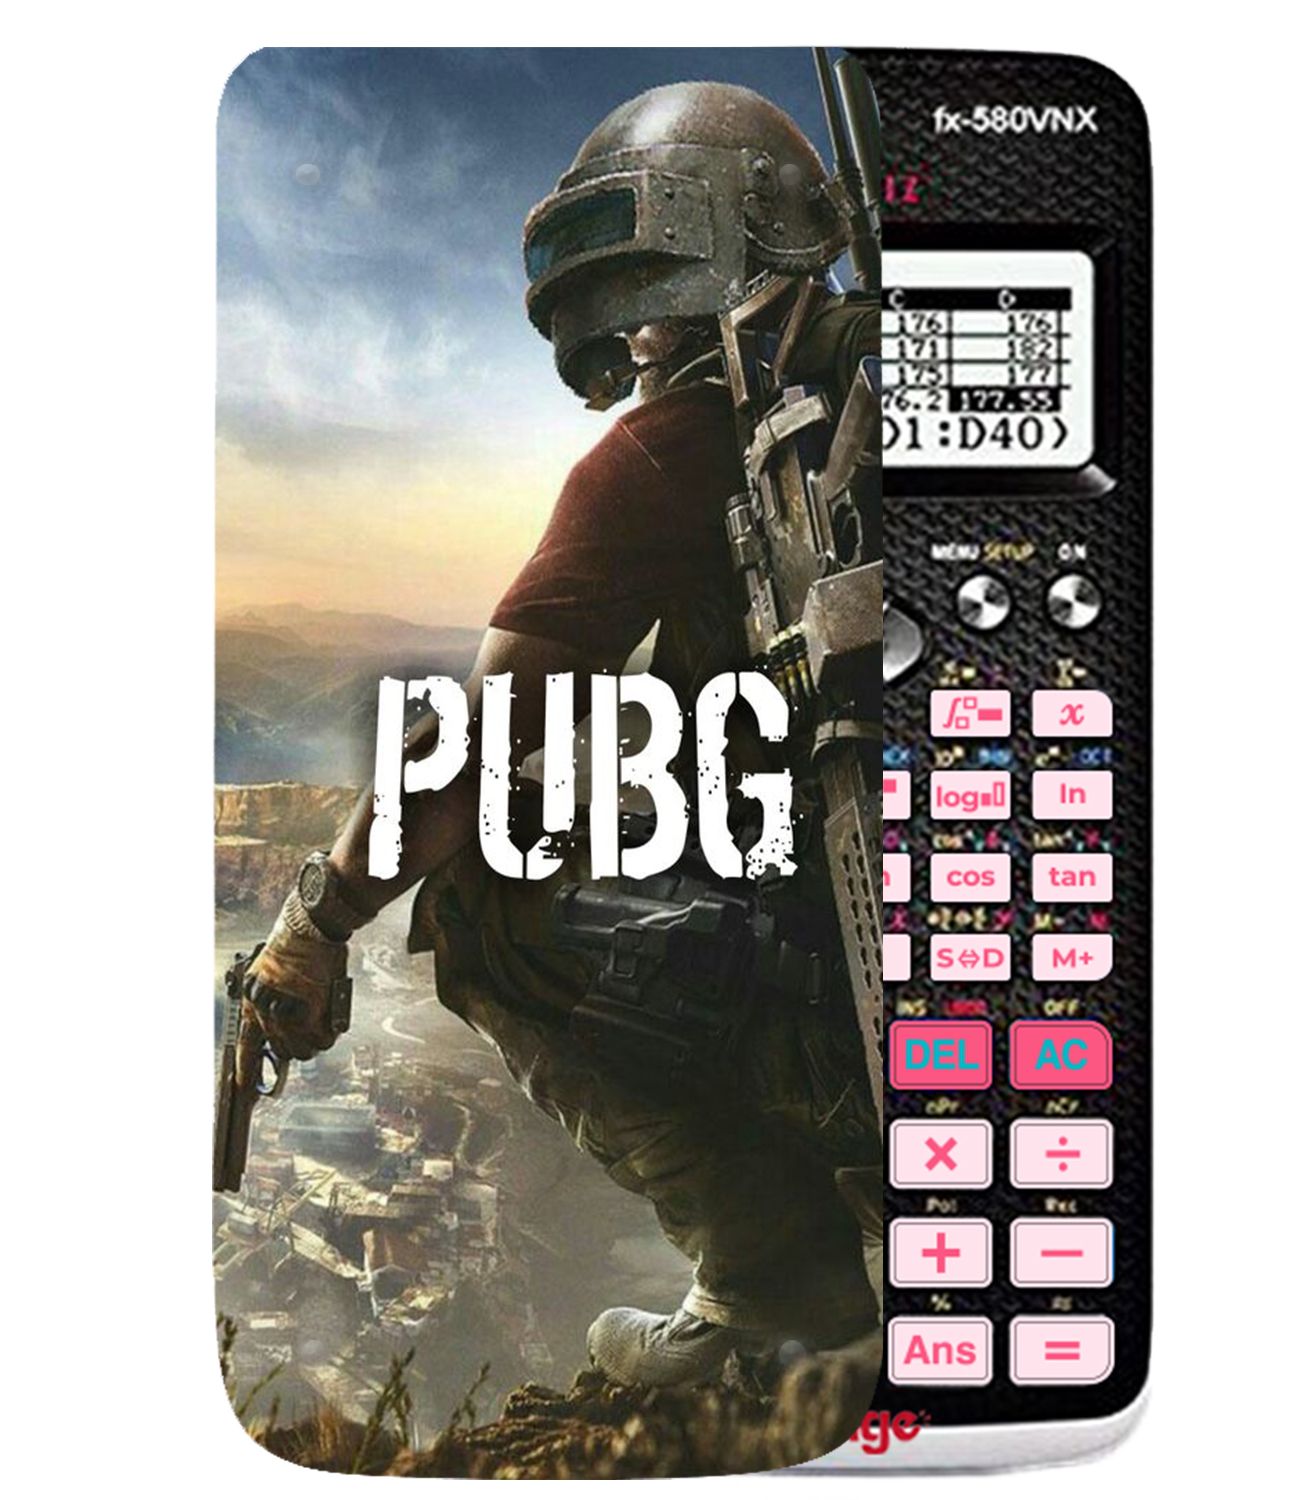 Ốp máy tính Casio FX 580 VNX game Pubg 004